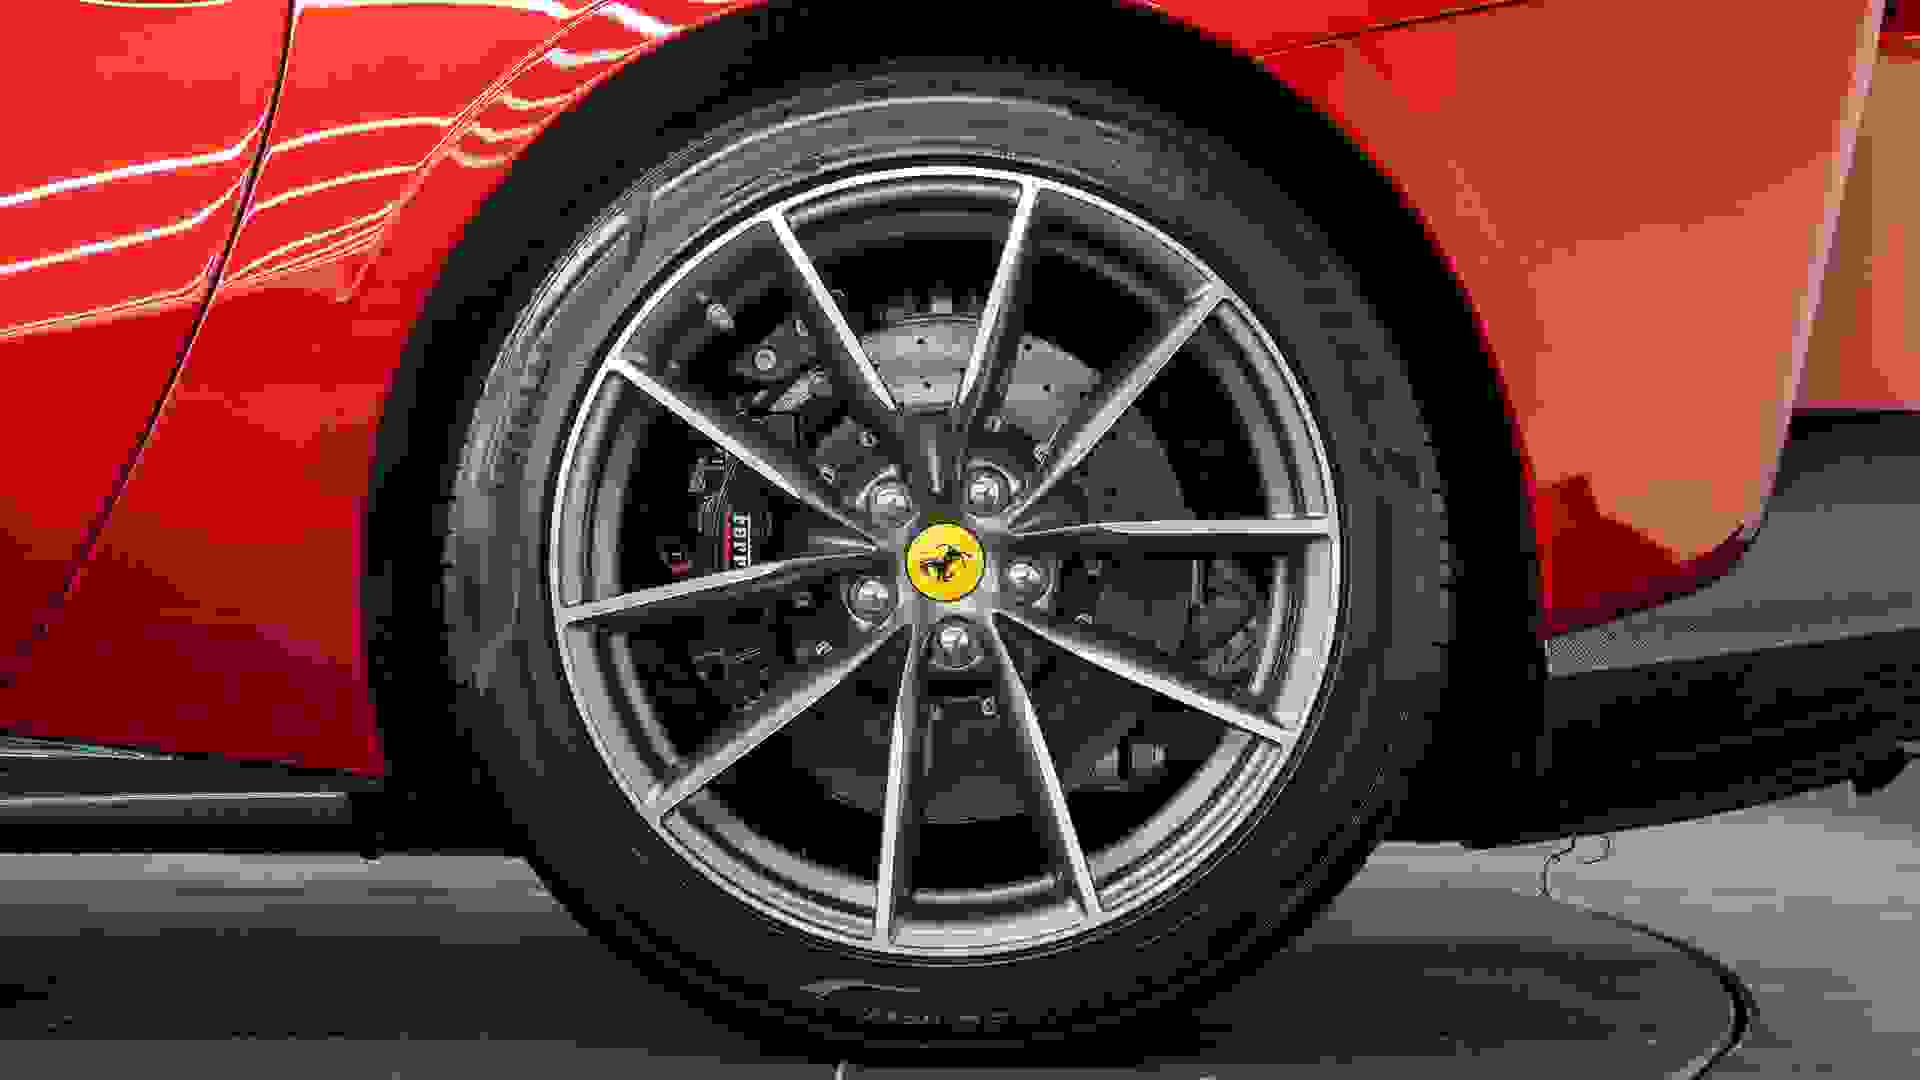 Ferrari 812 Photo d0aaac82-a122-425a-bf44-761e46a90f68.jpg